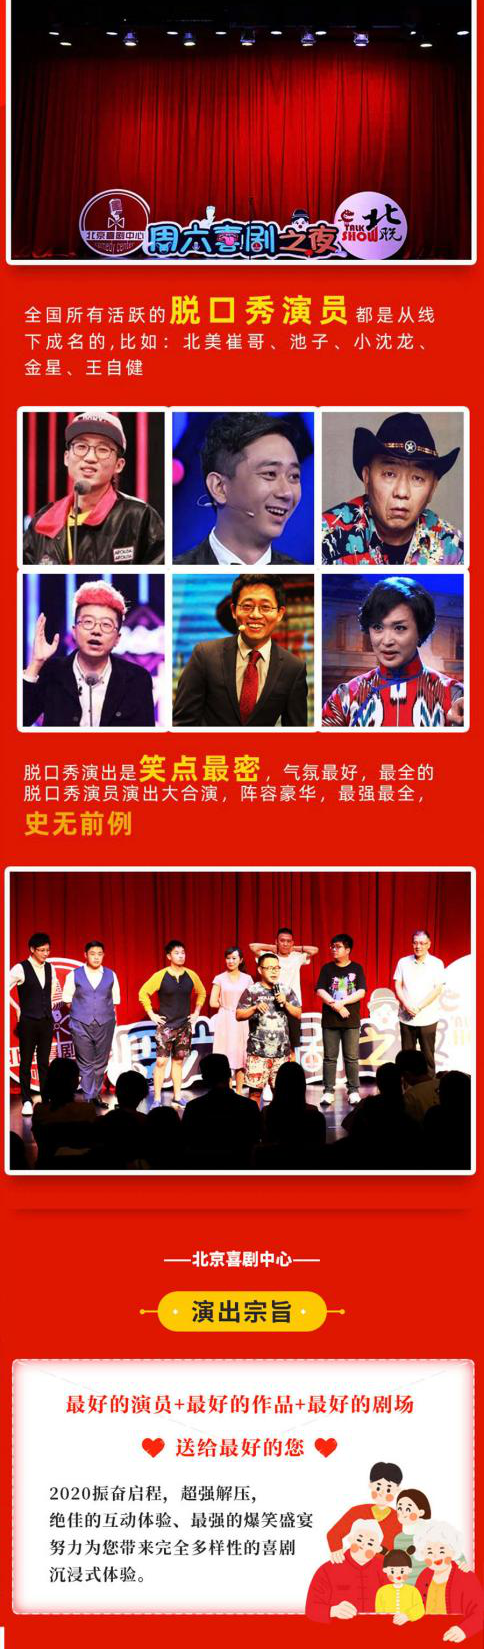 【五一脱口秀嘉年华】爆笑打卡地 2021劳动节-喜剧中心X开心欢乐大会-北京站